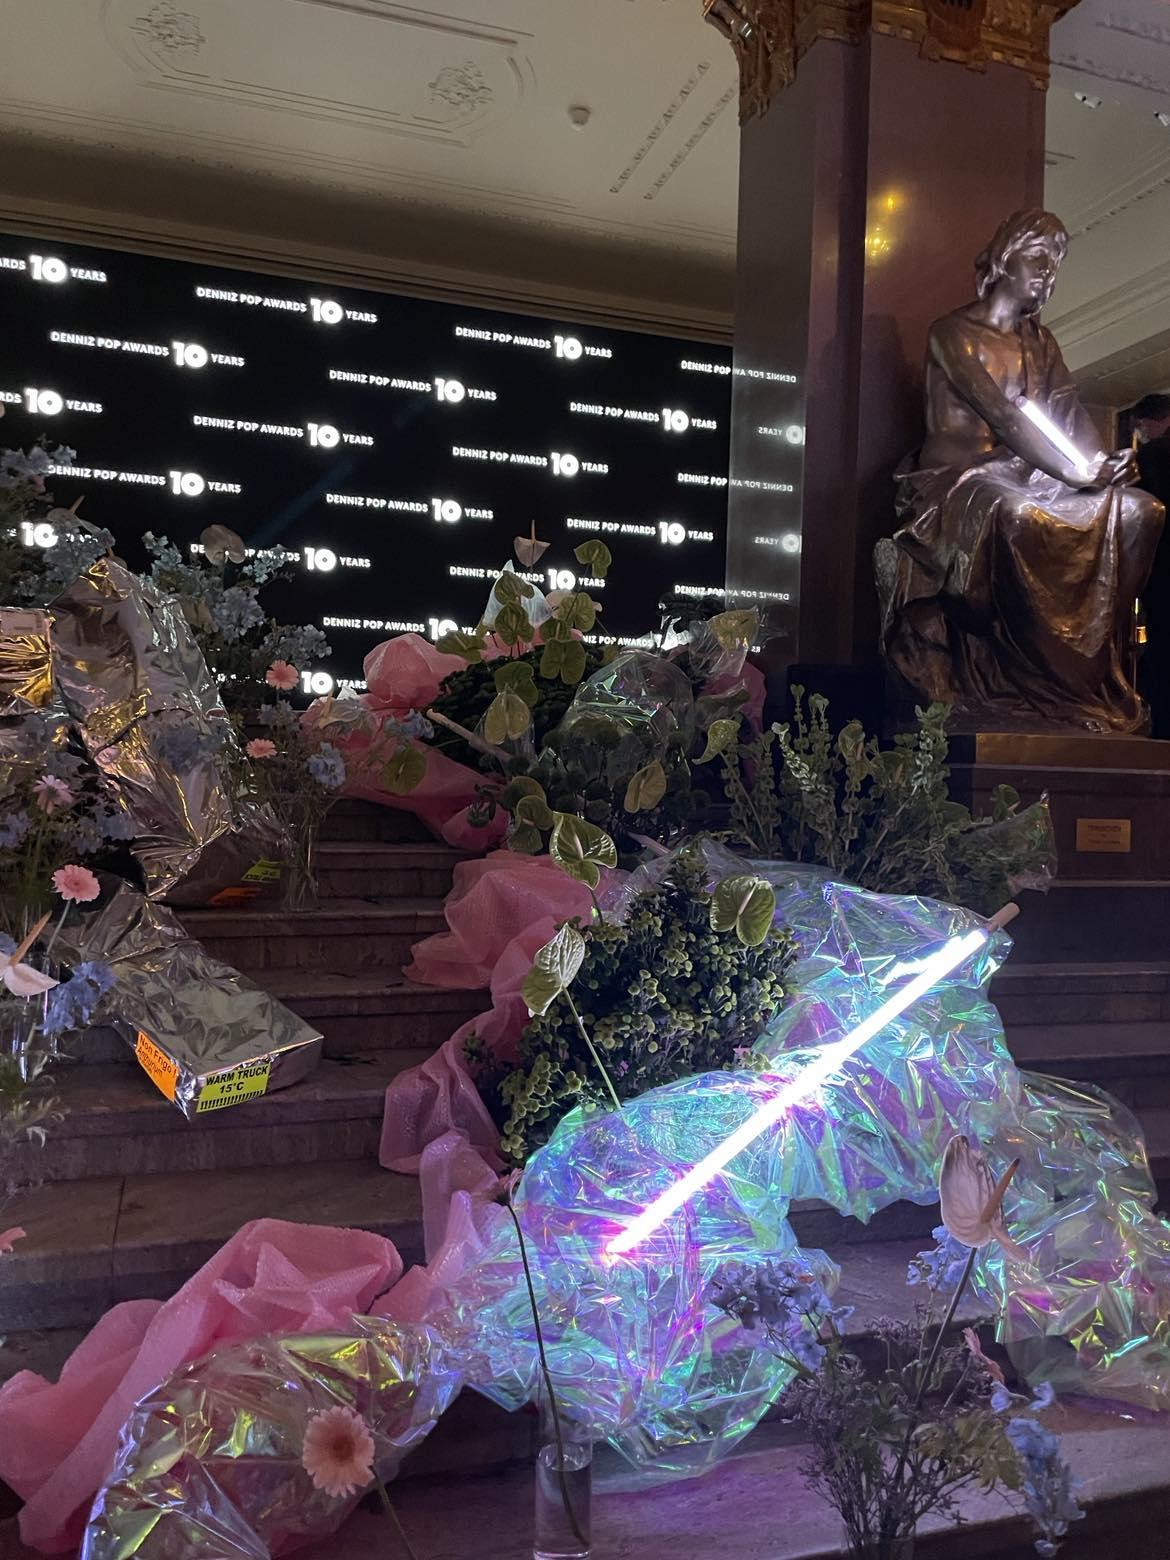 Image of a japanese floral arrangement at Denniz Pop Awards